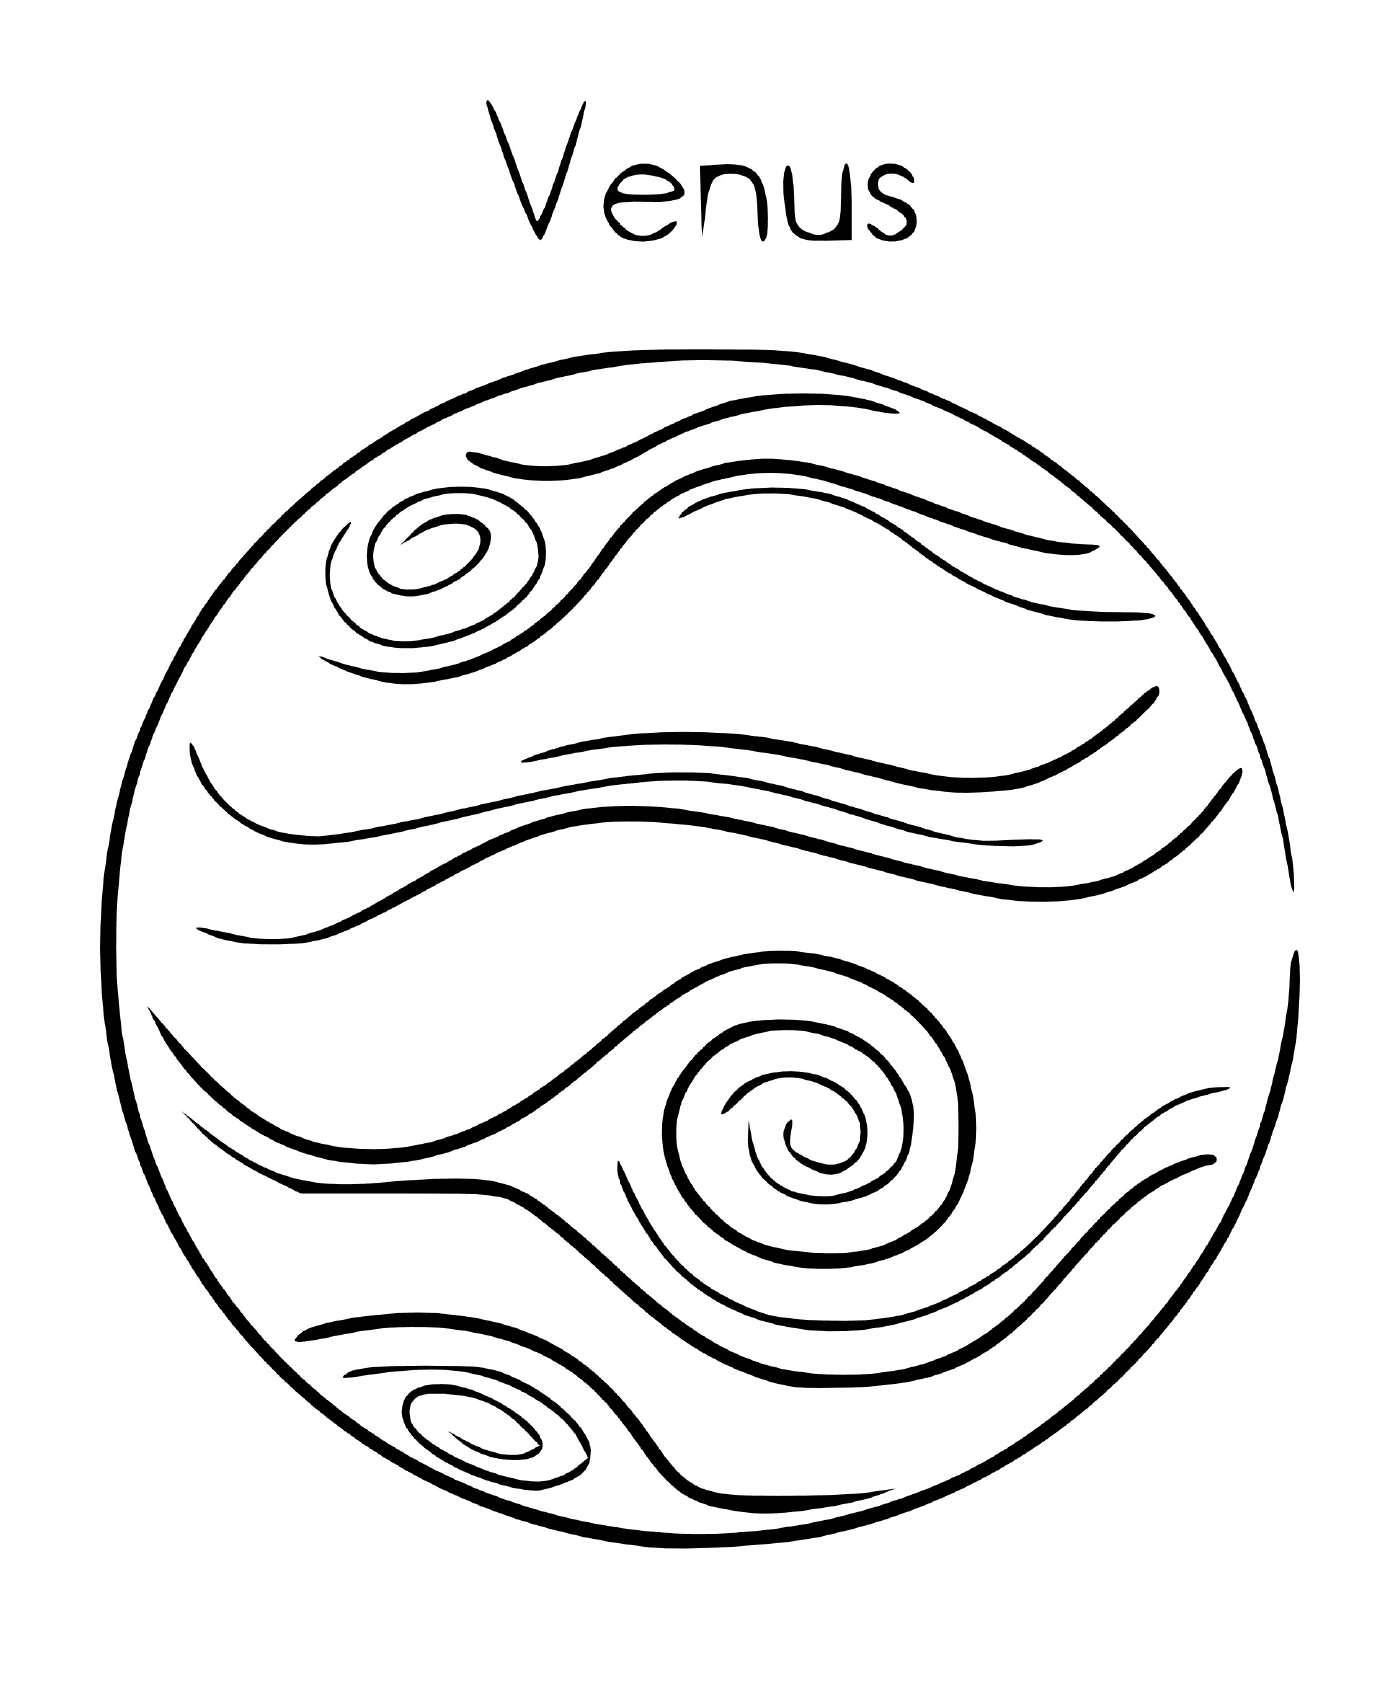  Planeta Vênus em órbita 